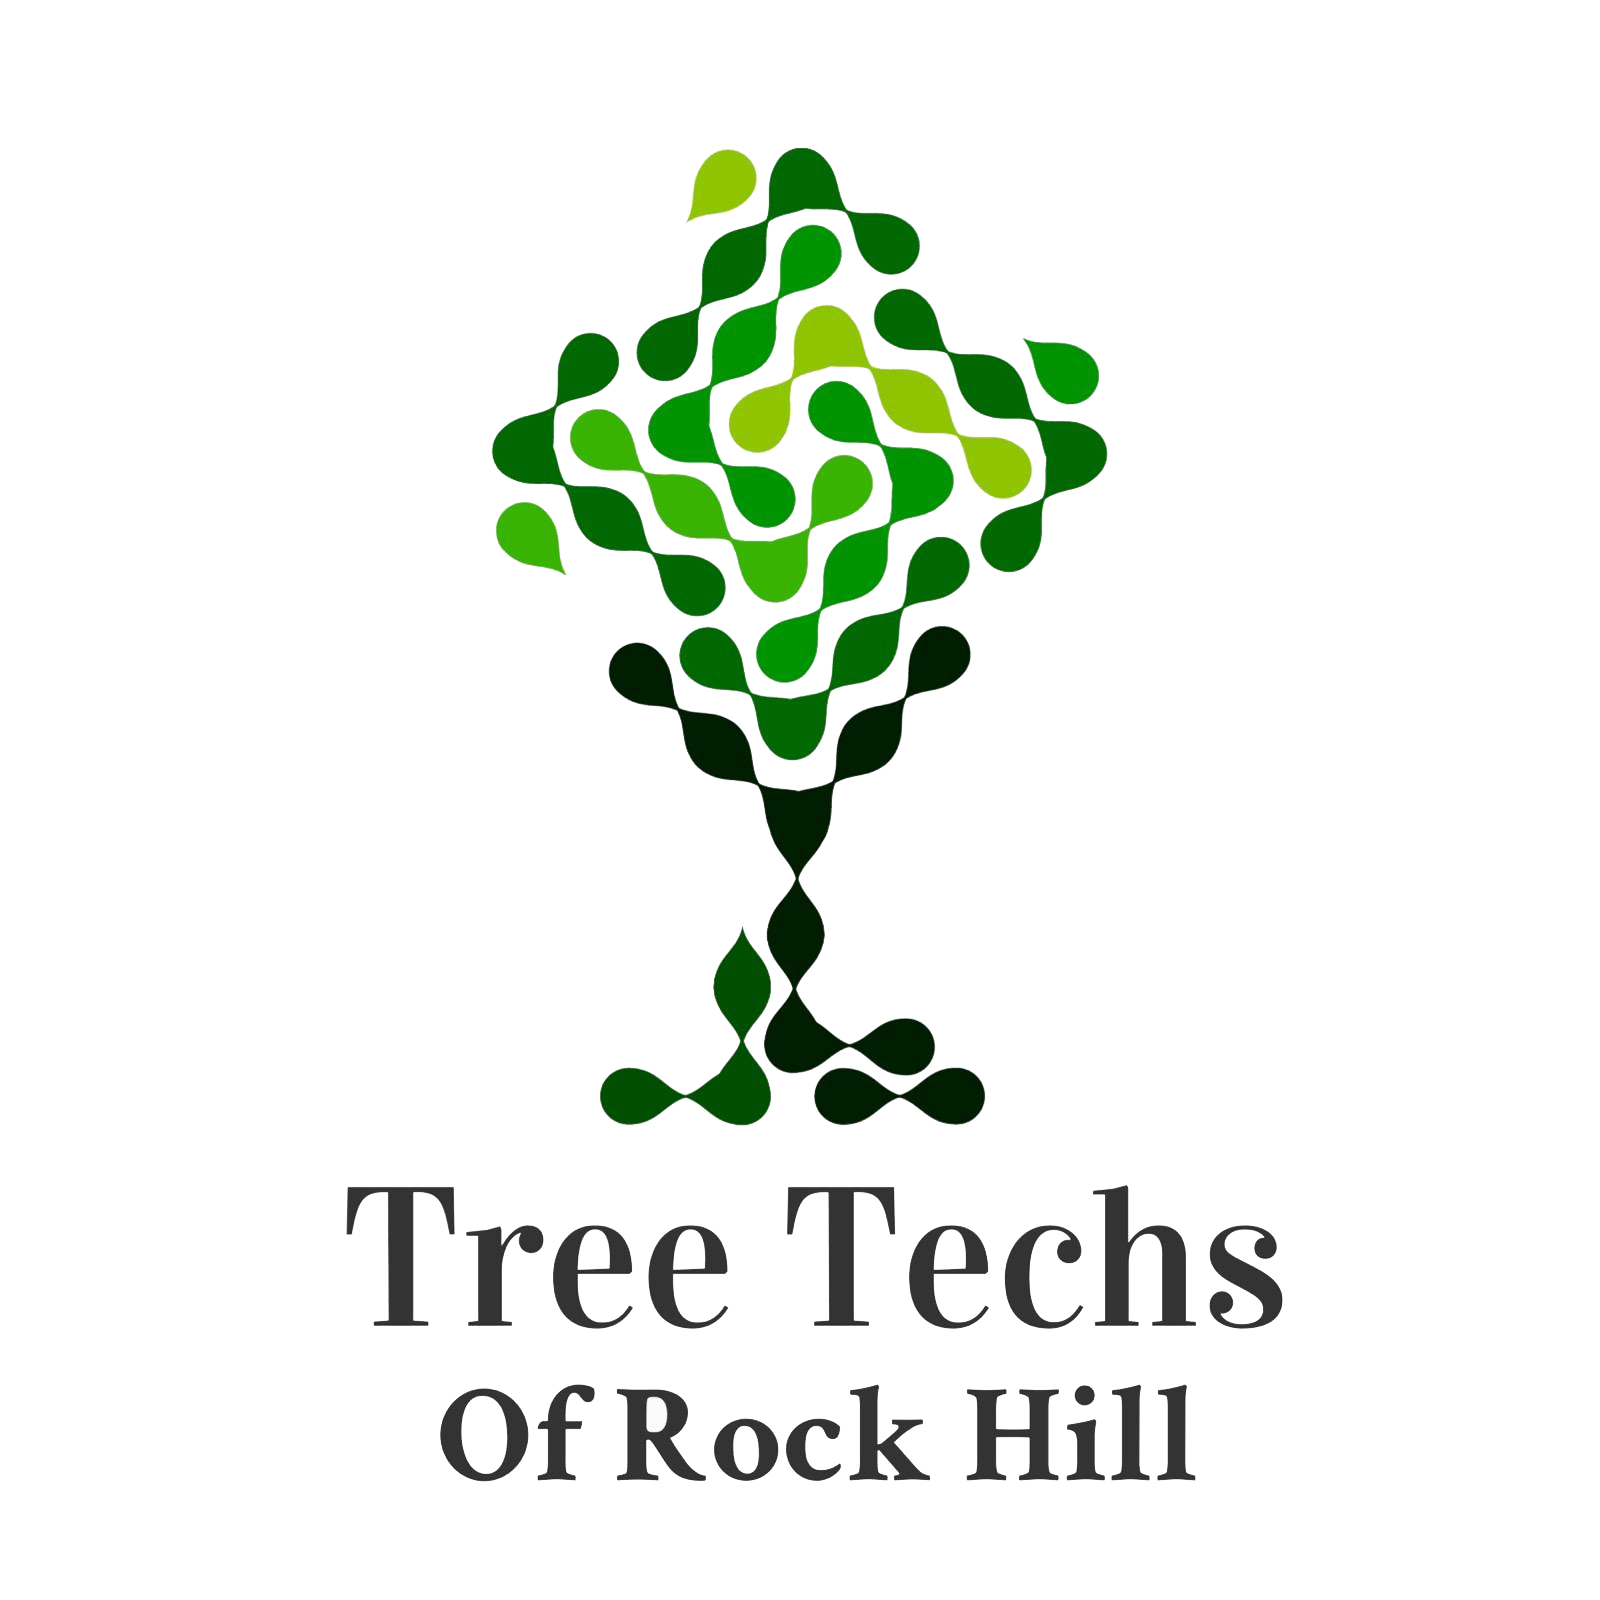 Tree Techs of Rock Hill Logo